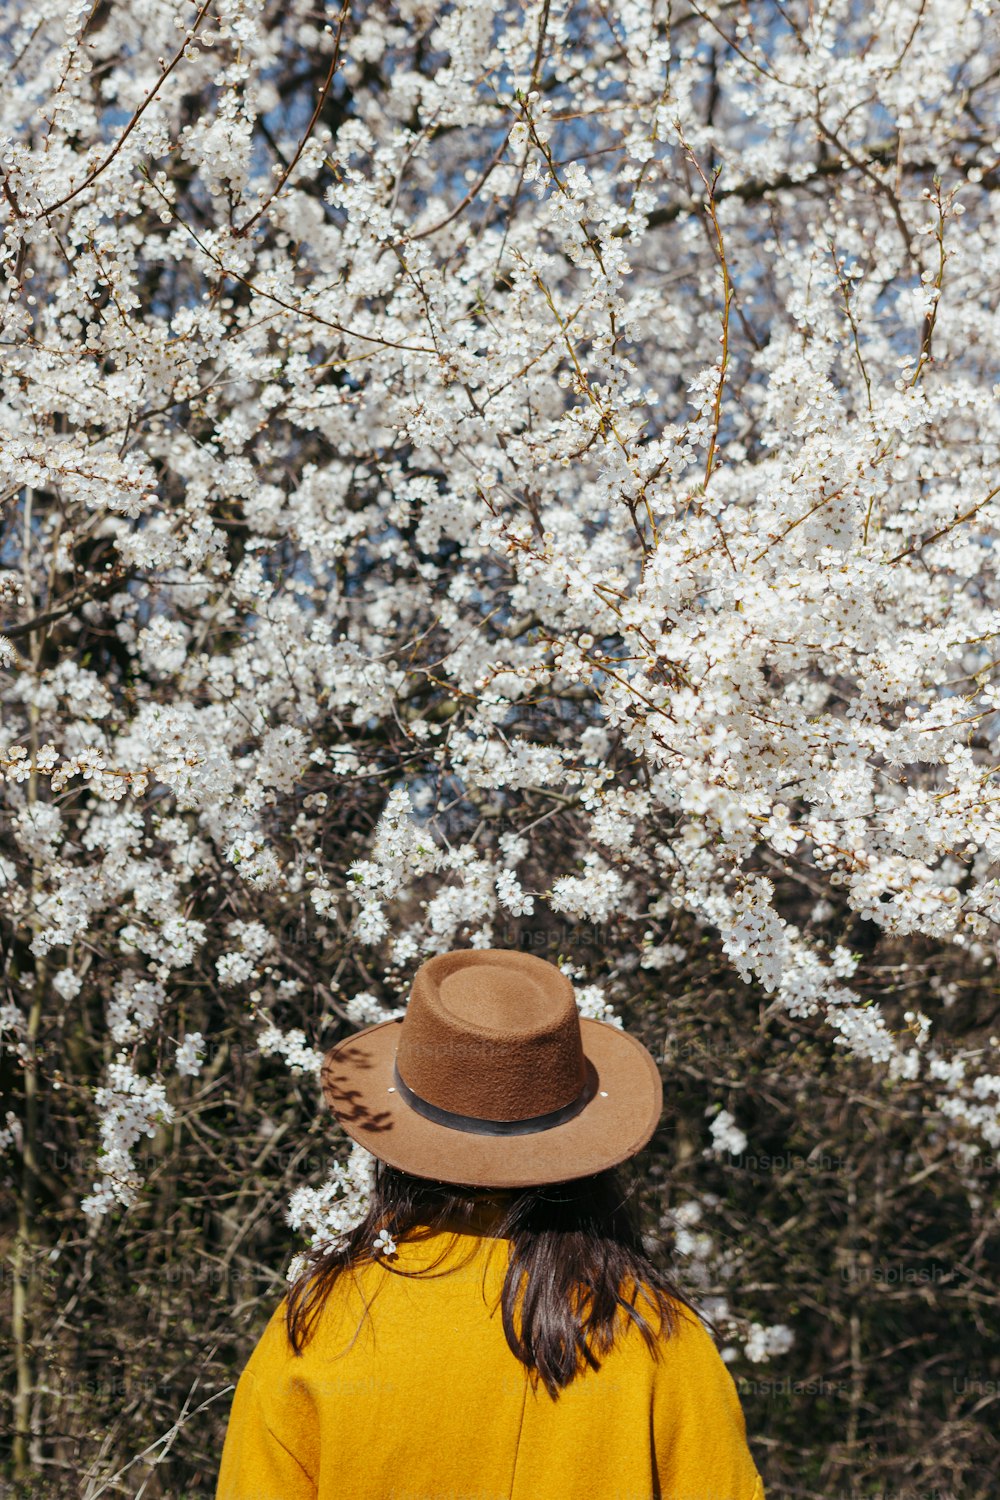 Donna elegante in cappello che posa sensualmente tra rami di ciliegio in fiore in una soleggiata giornata primaverile, vista posteriore. Momento calmo e tranquillo. Femmina alla moda in giacca gialla che abbraccia in fiori bianchi